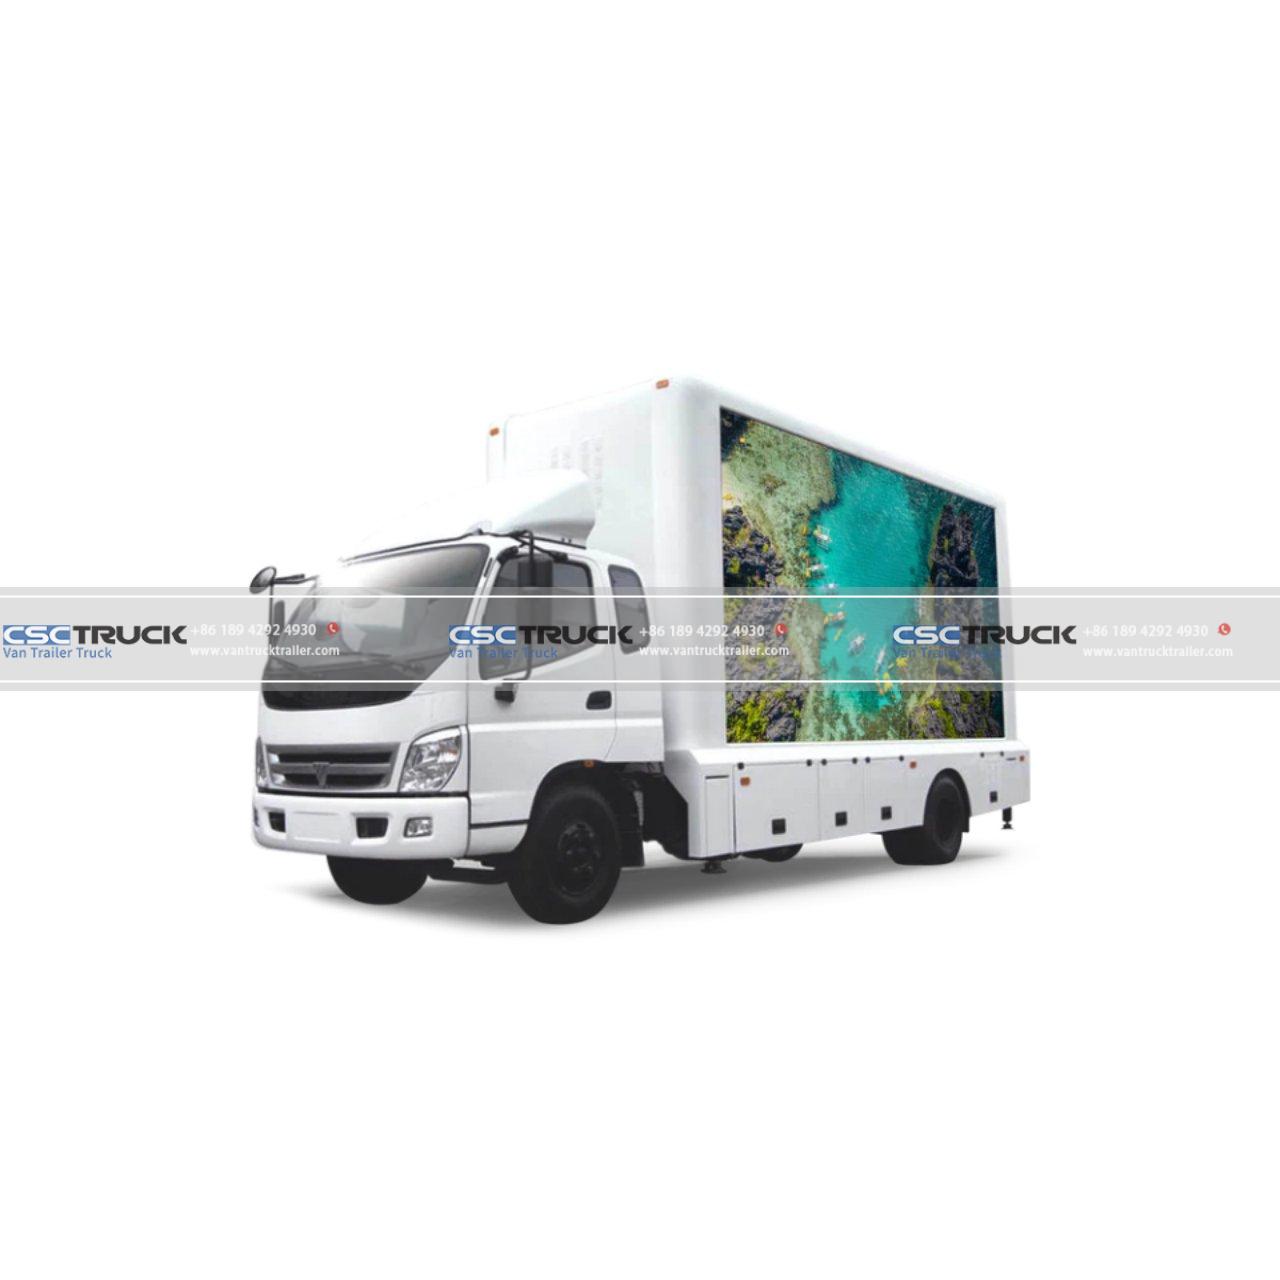 Mobile LED Truck (3)